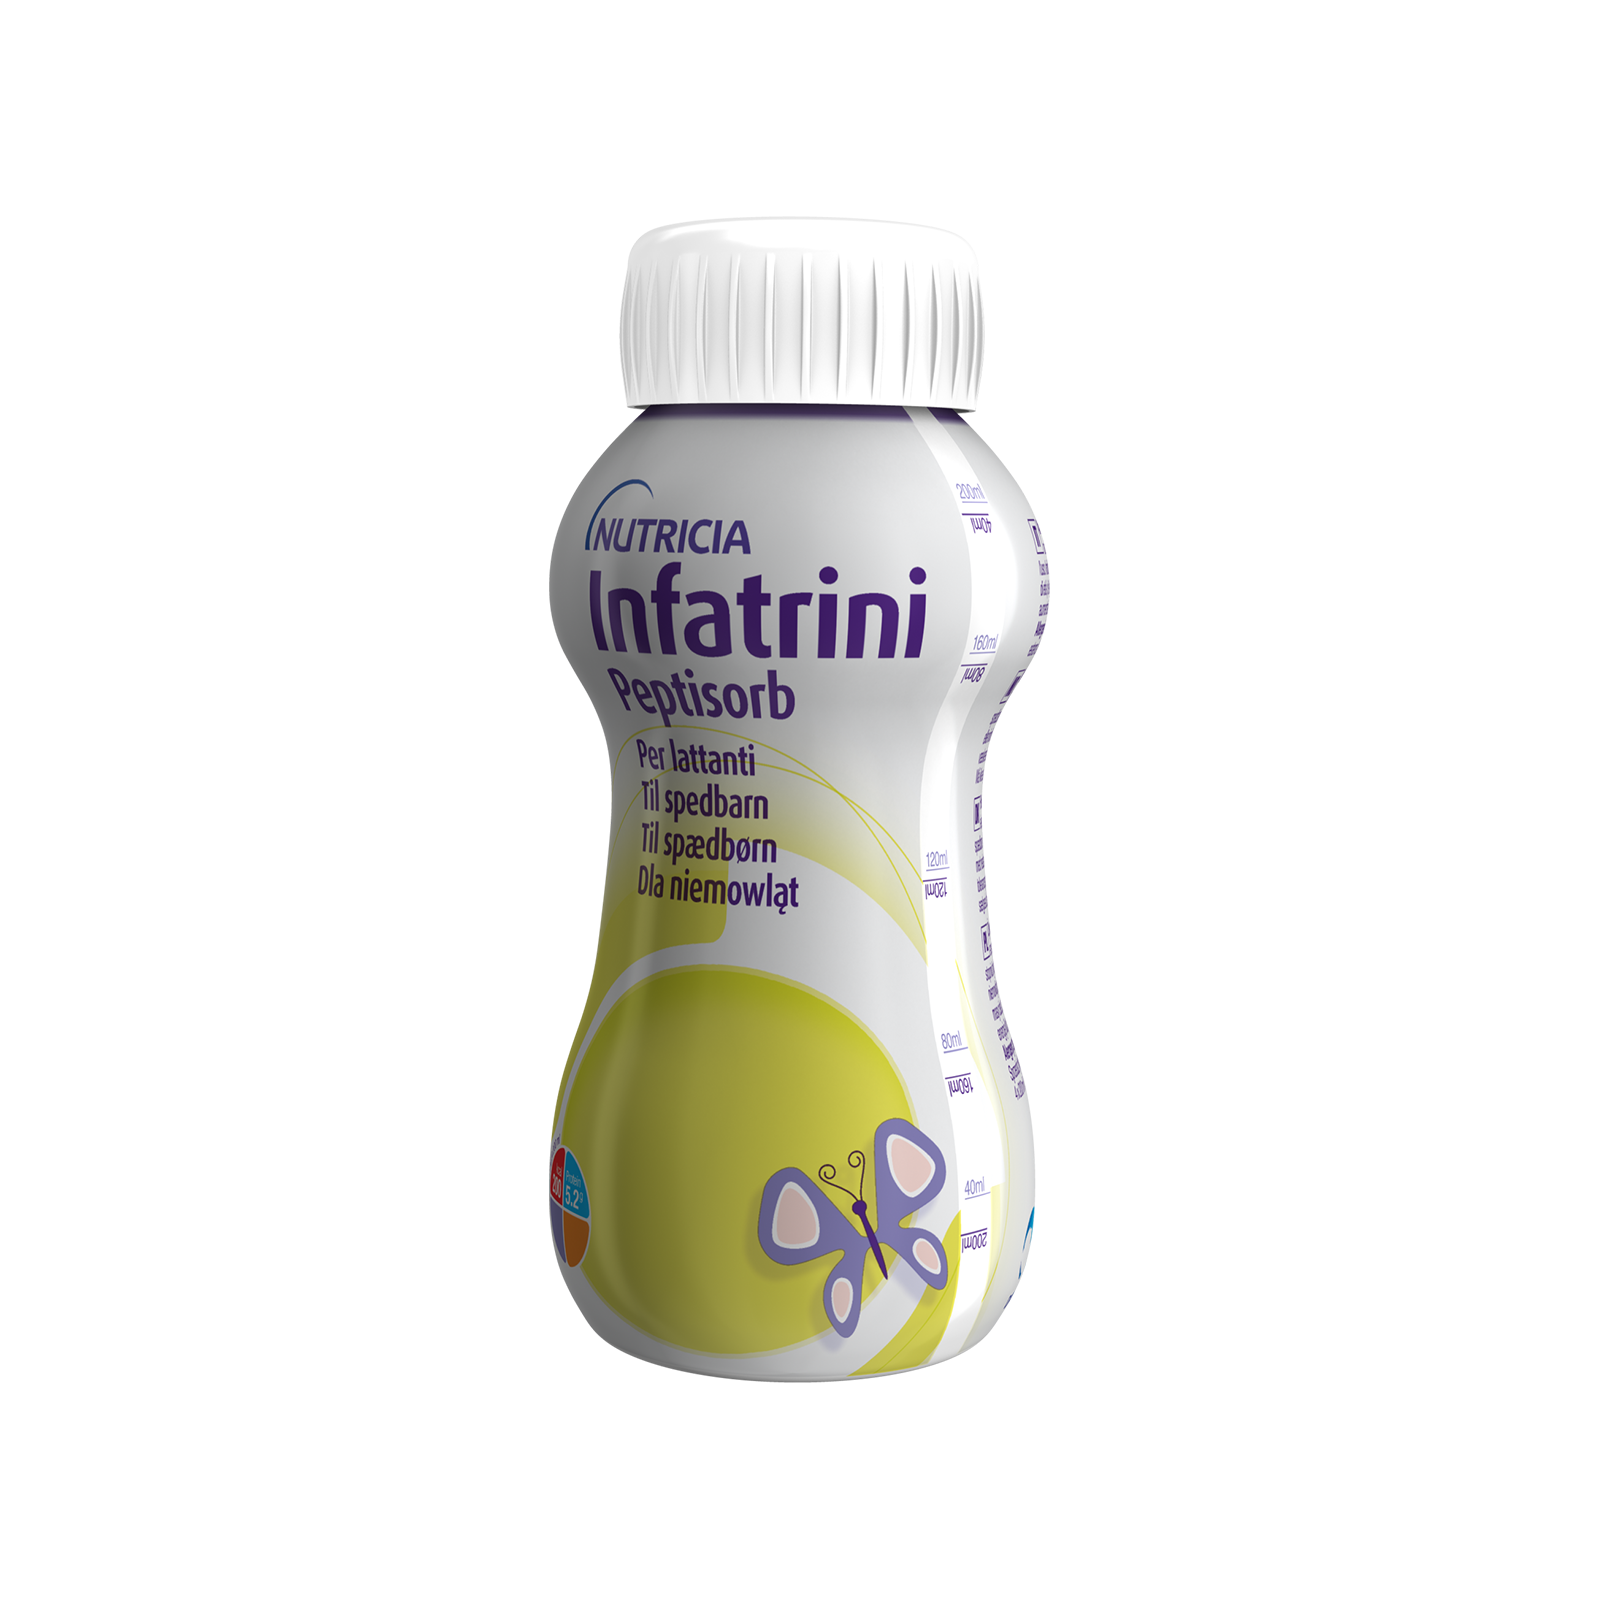 Infatrini Peptisorb 4x Bottiglietta 200 ml | Nutricia